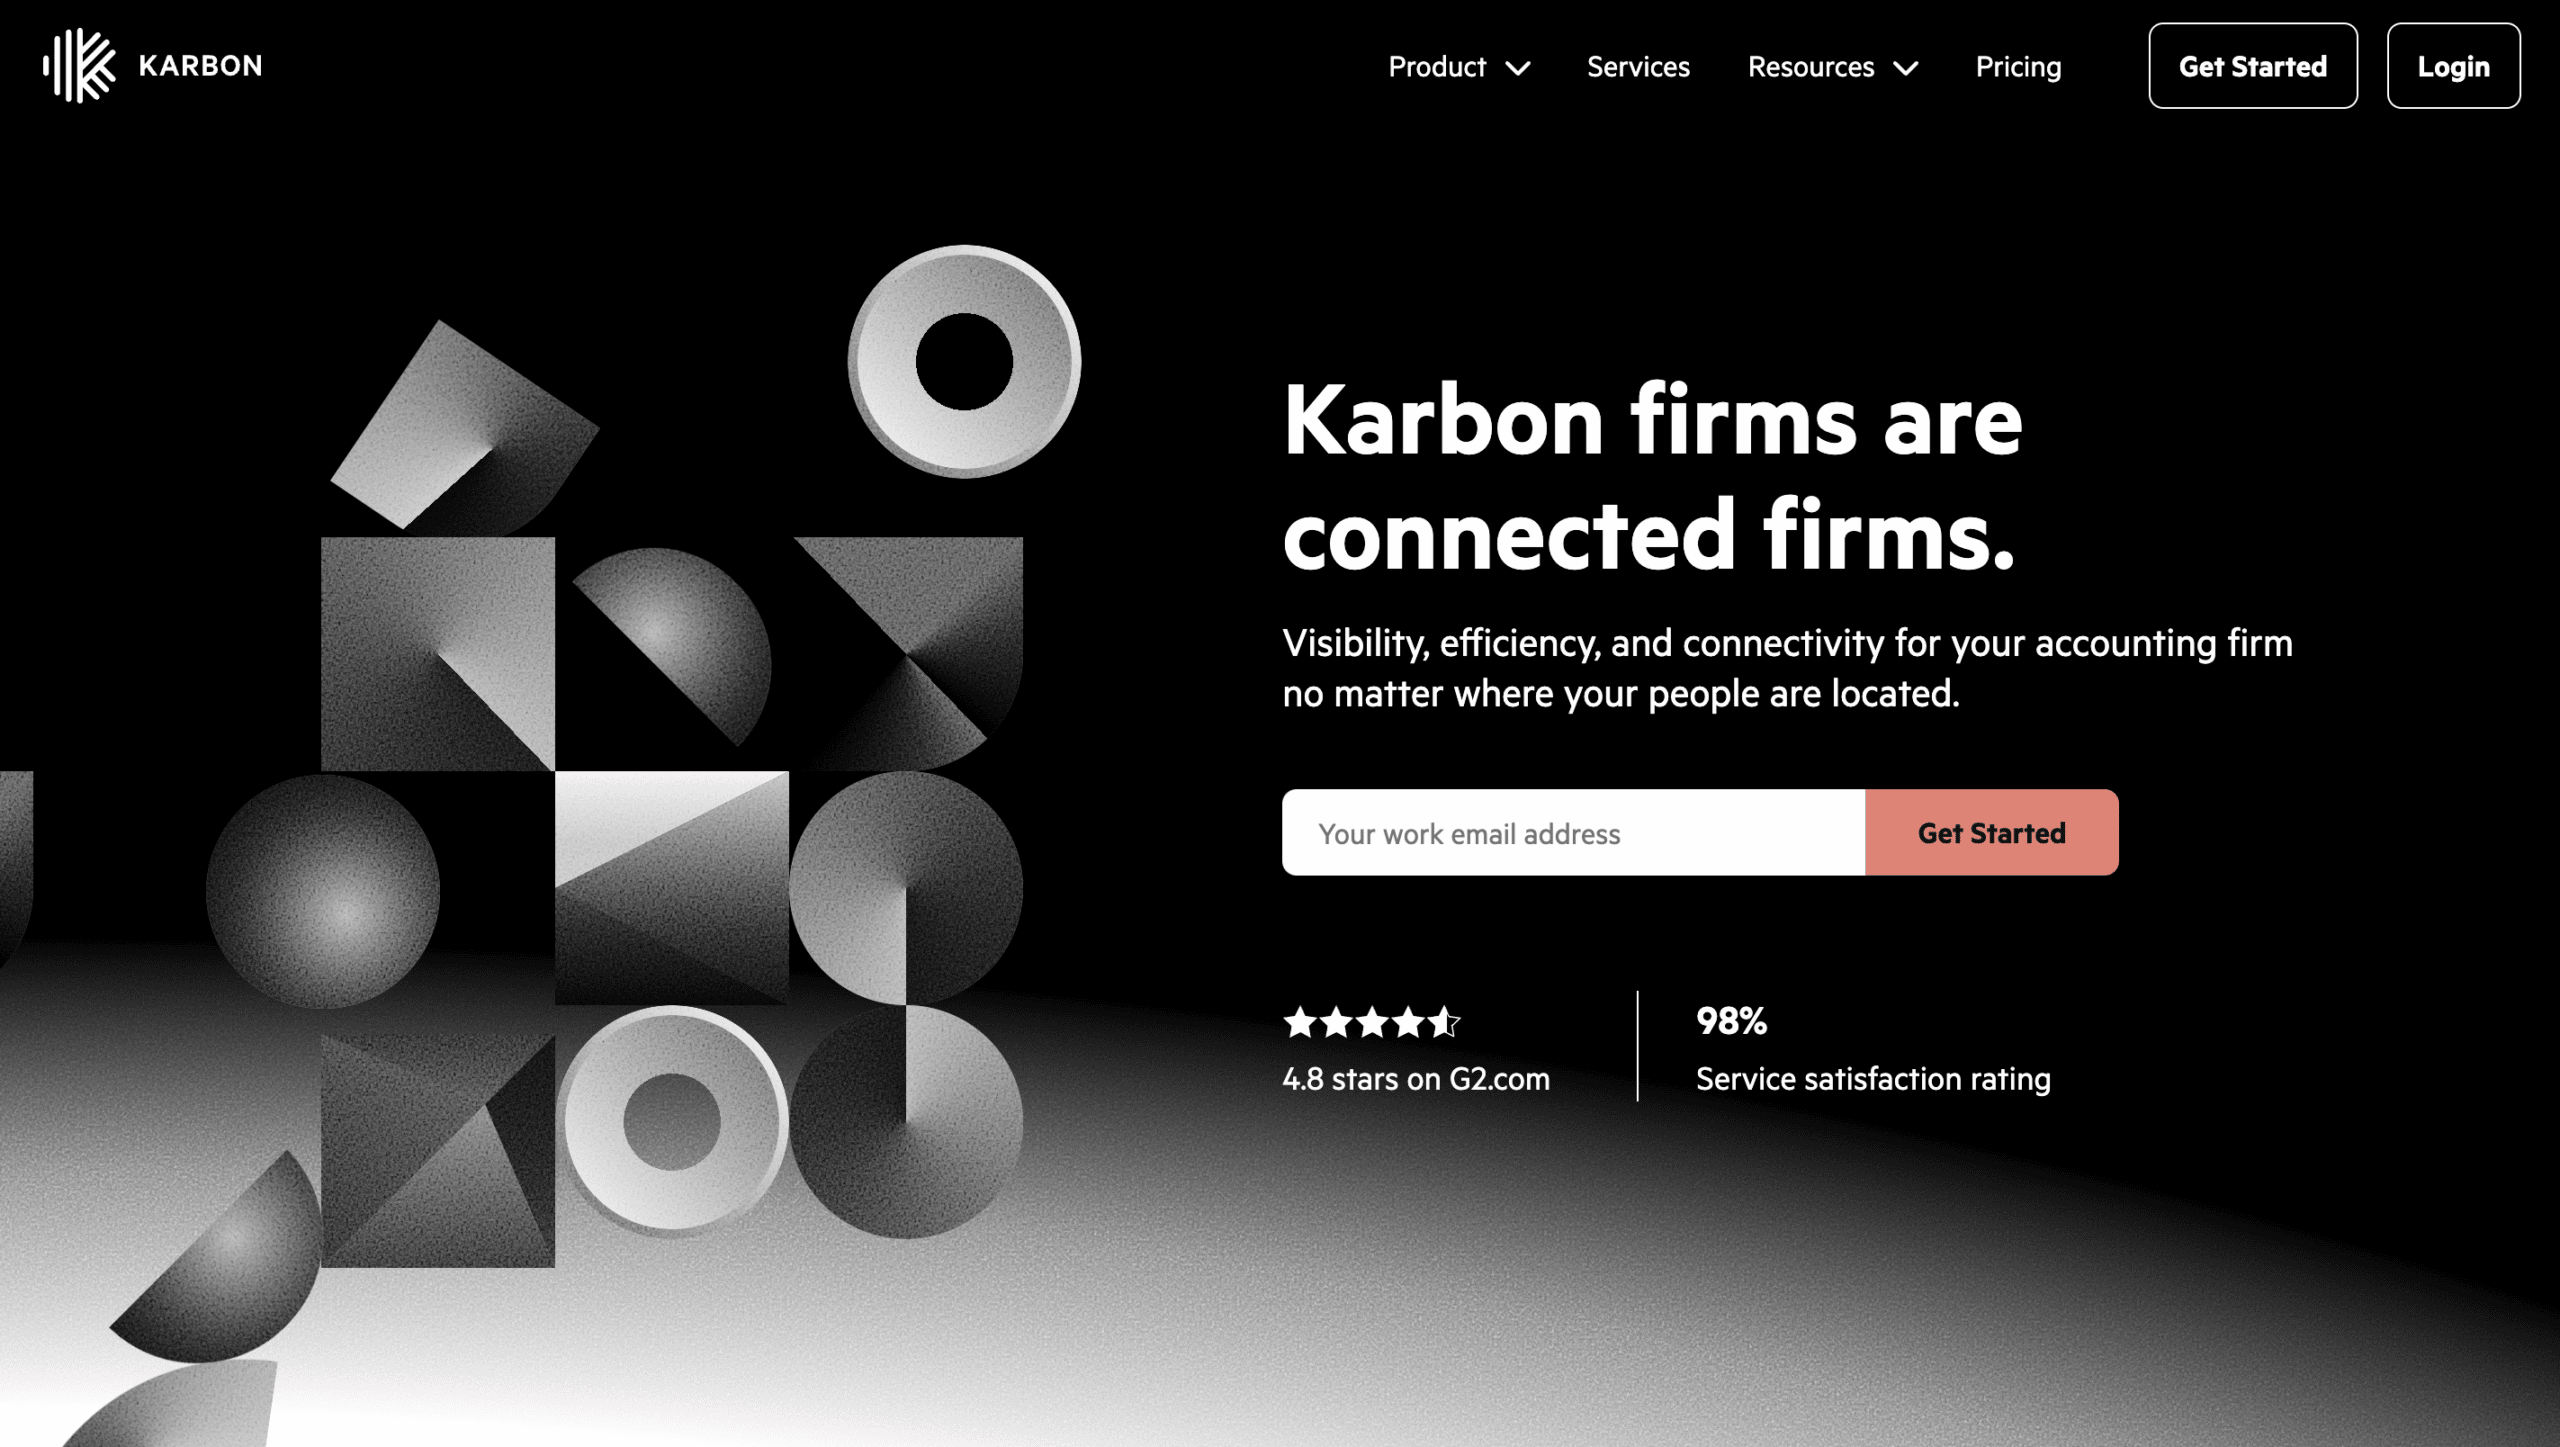 Image of Karbon’s homepage